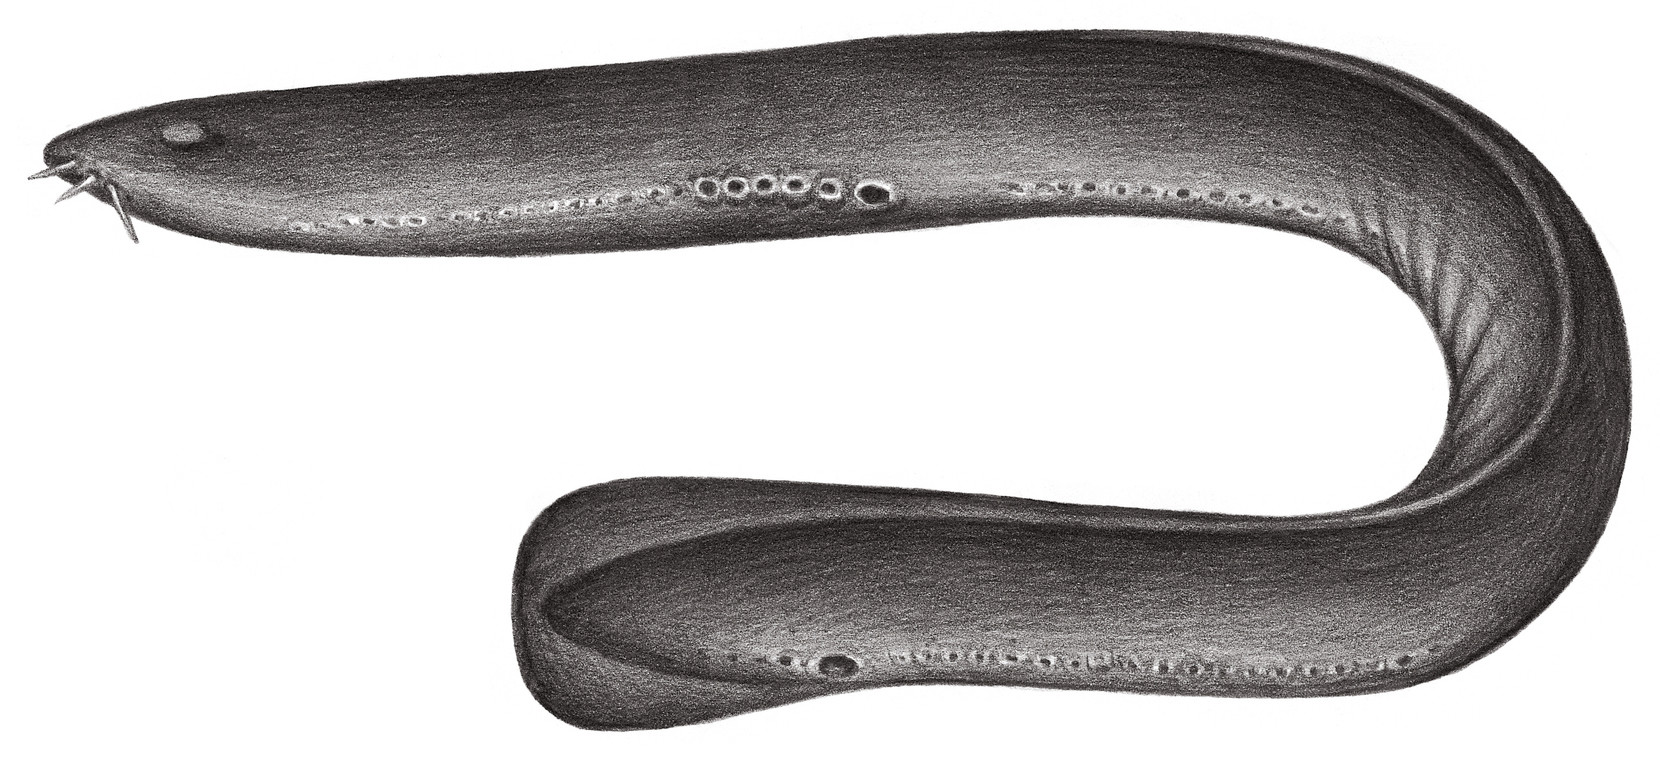 中華粘盲鰻 Eptatretus chinensis Kuo & Mok, 1994